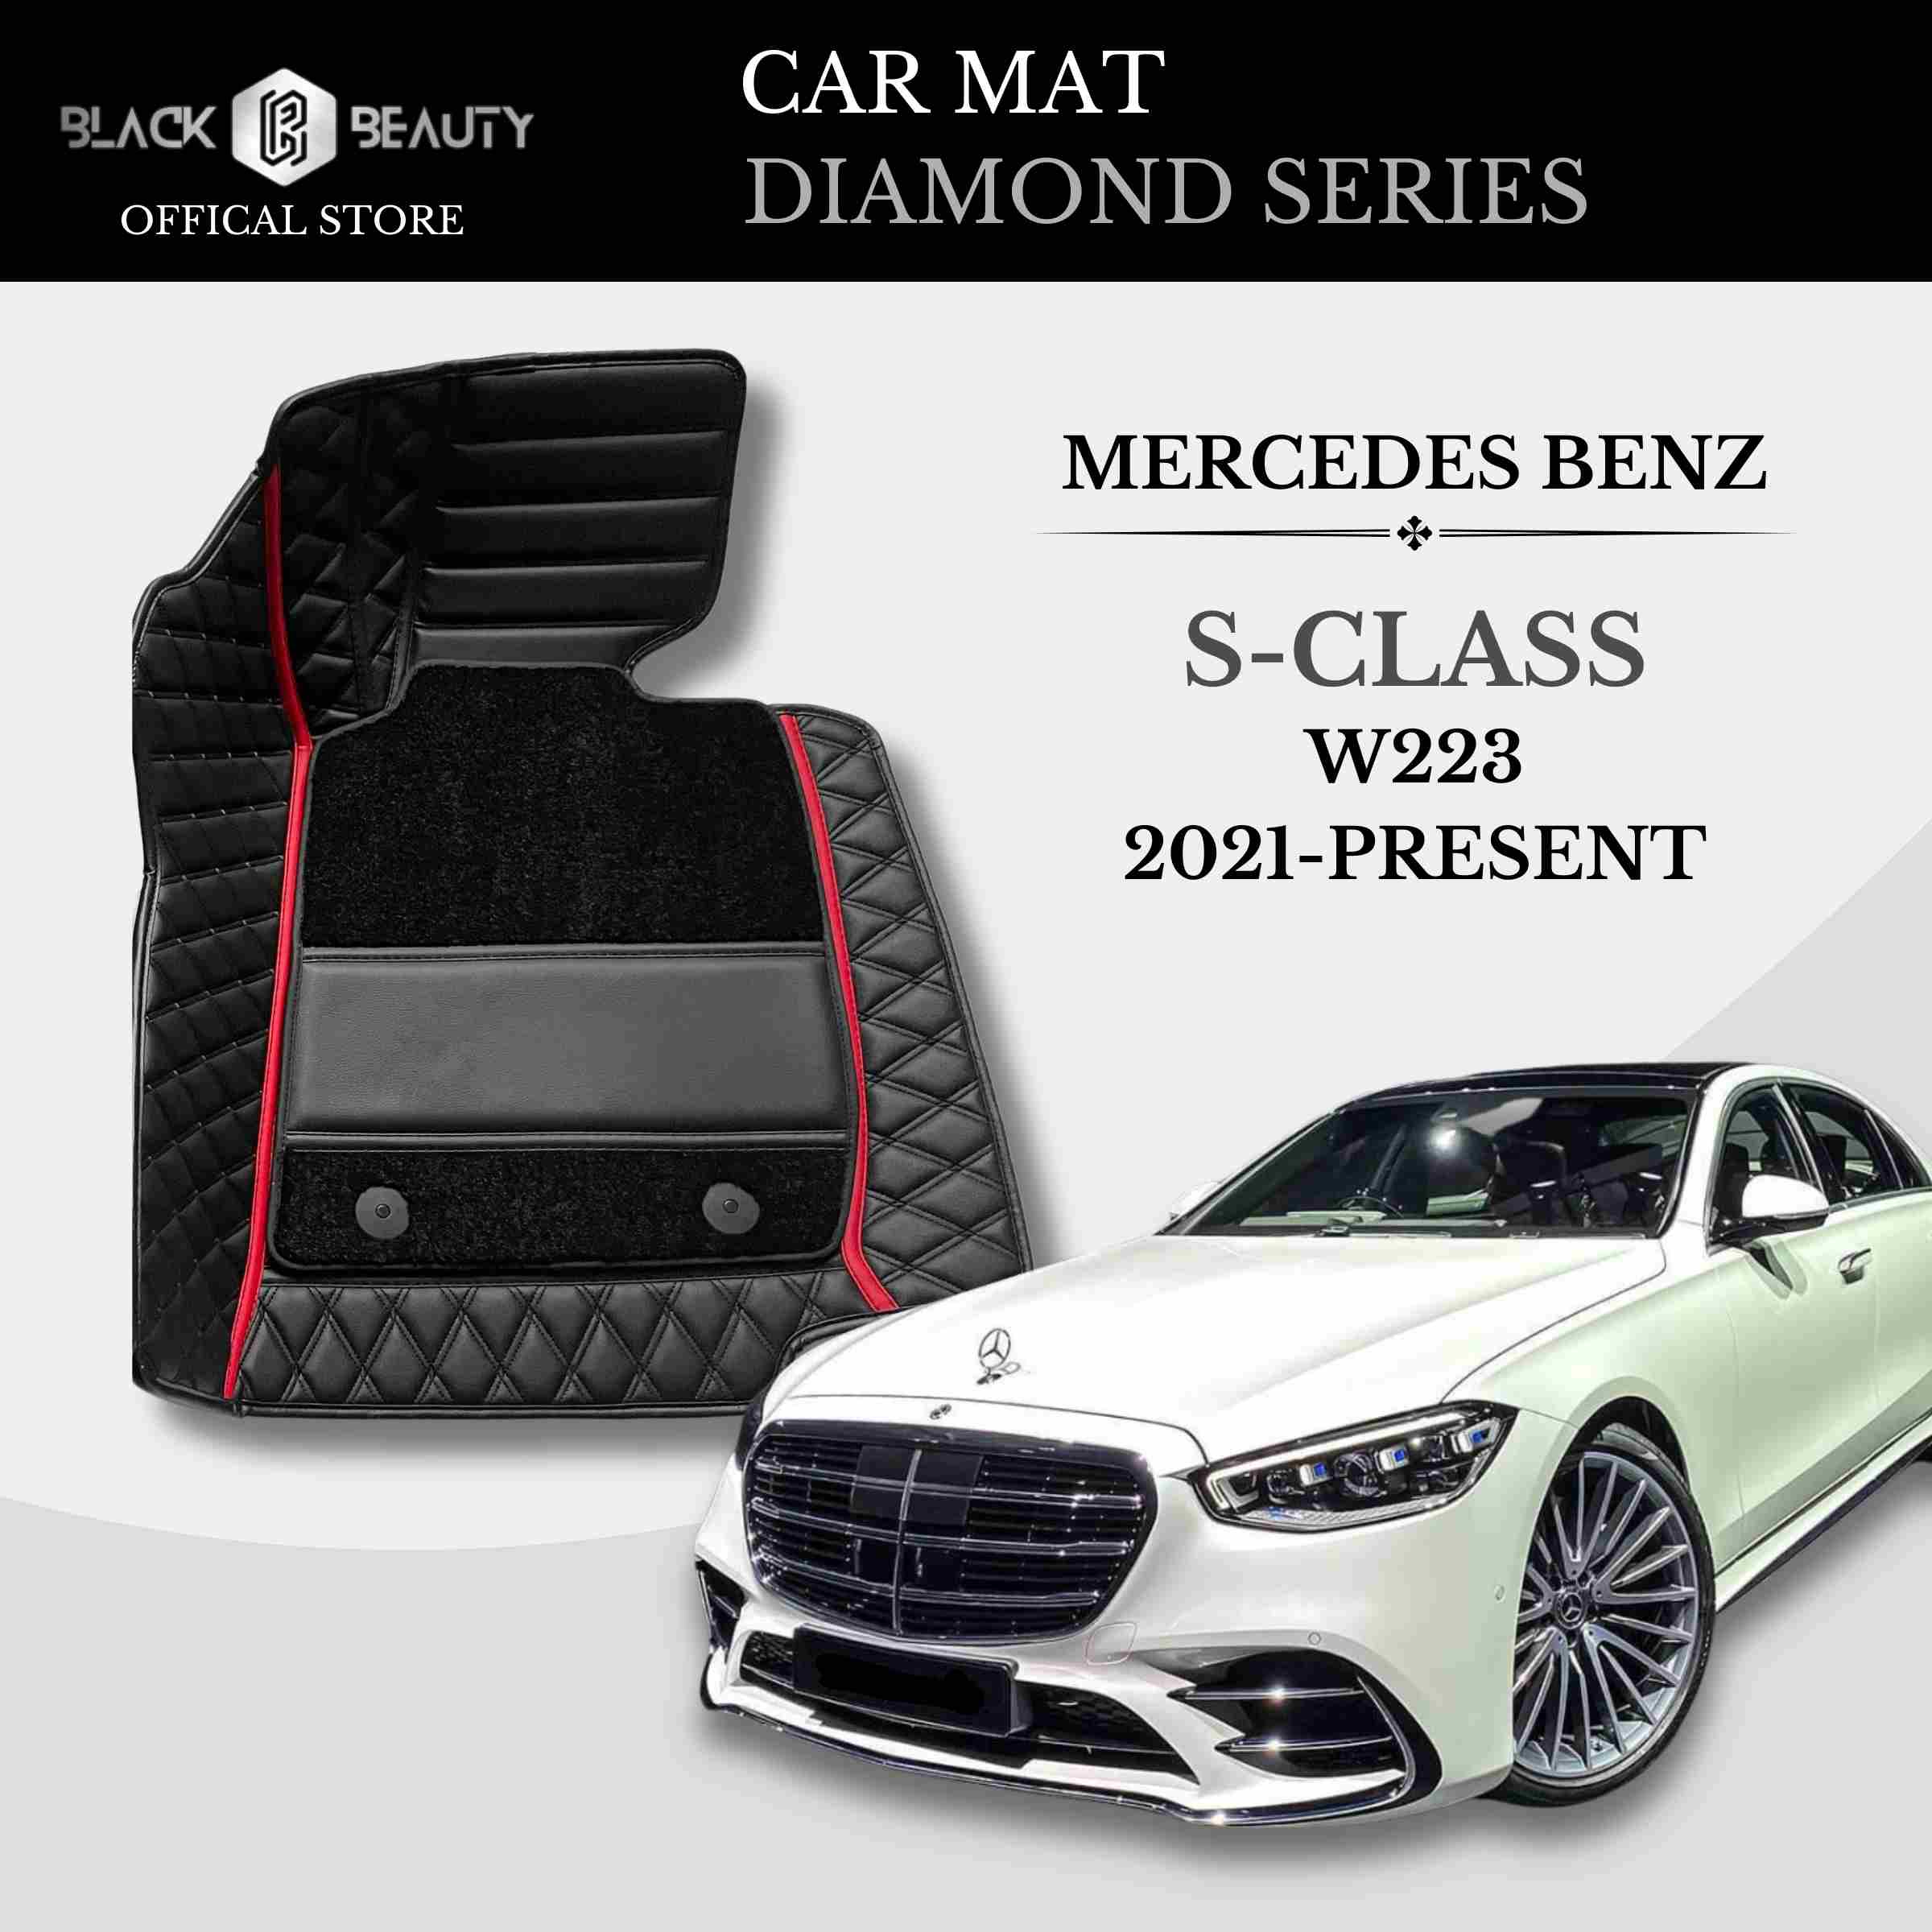 Mercedes Benz S-Class W223 (2021-Present) - Diamond Series Car Mat